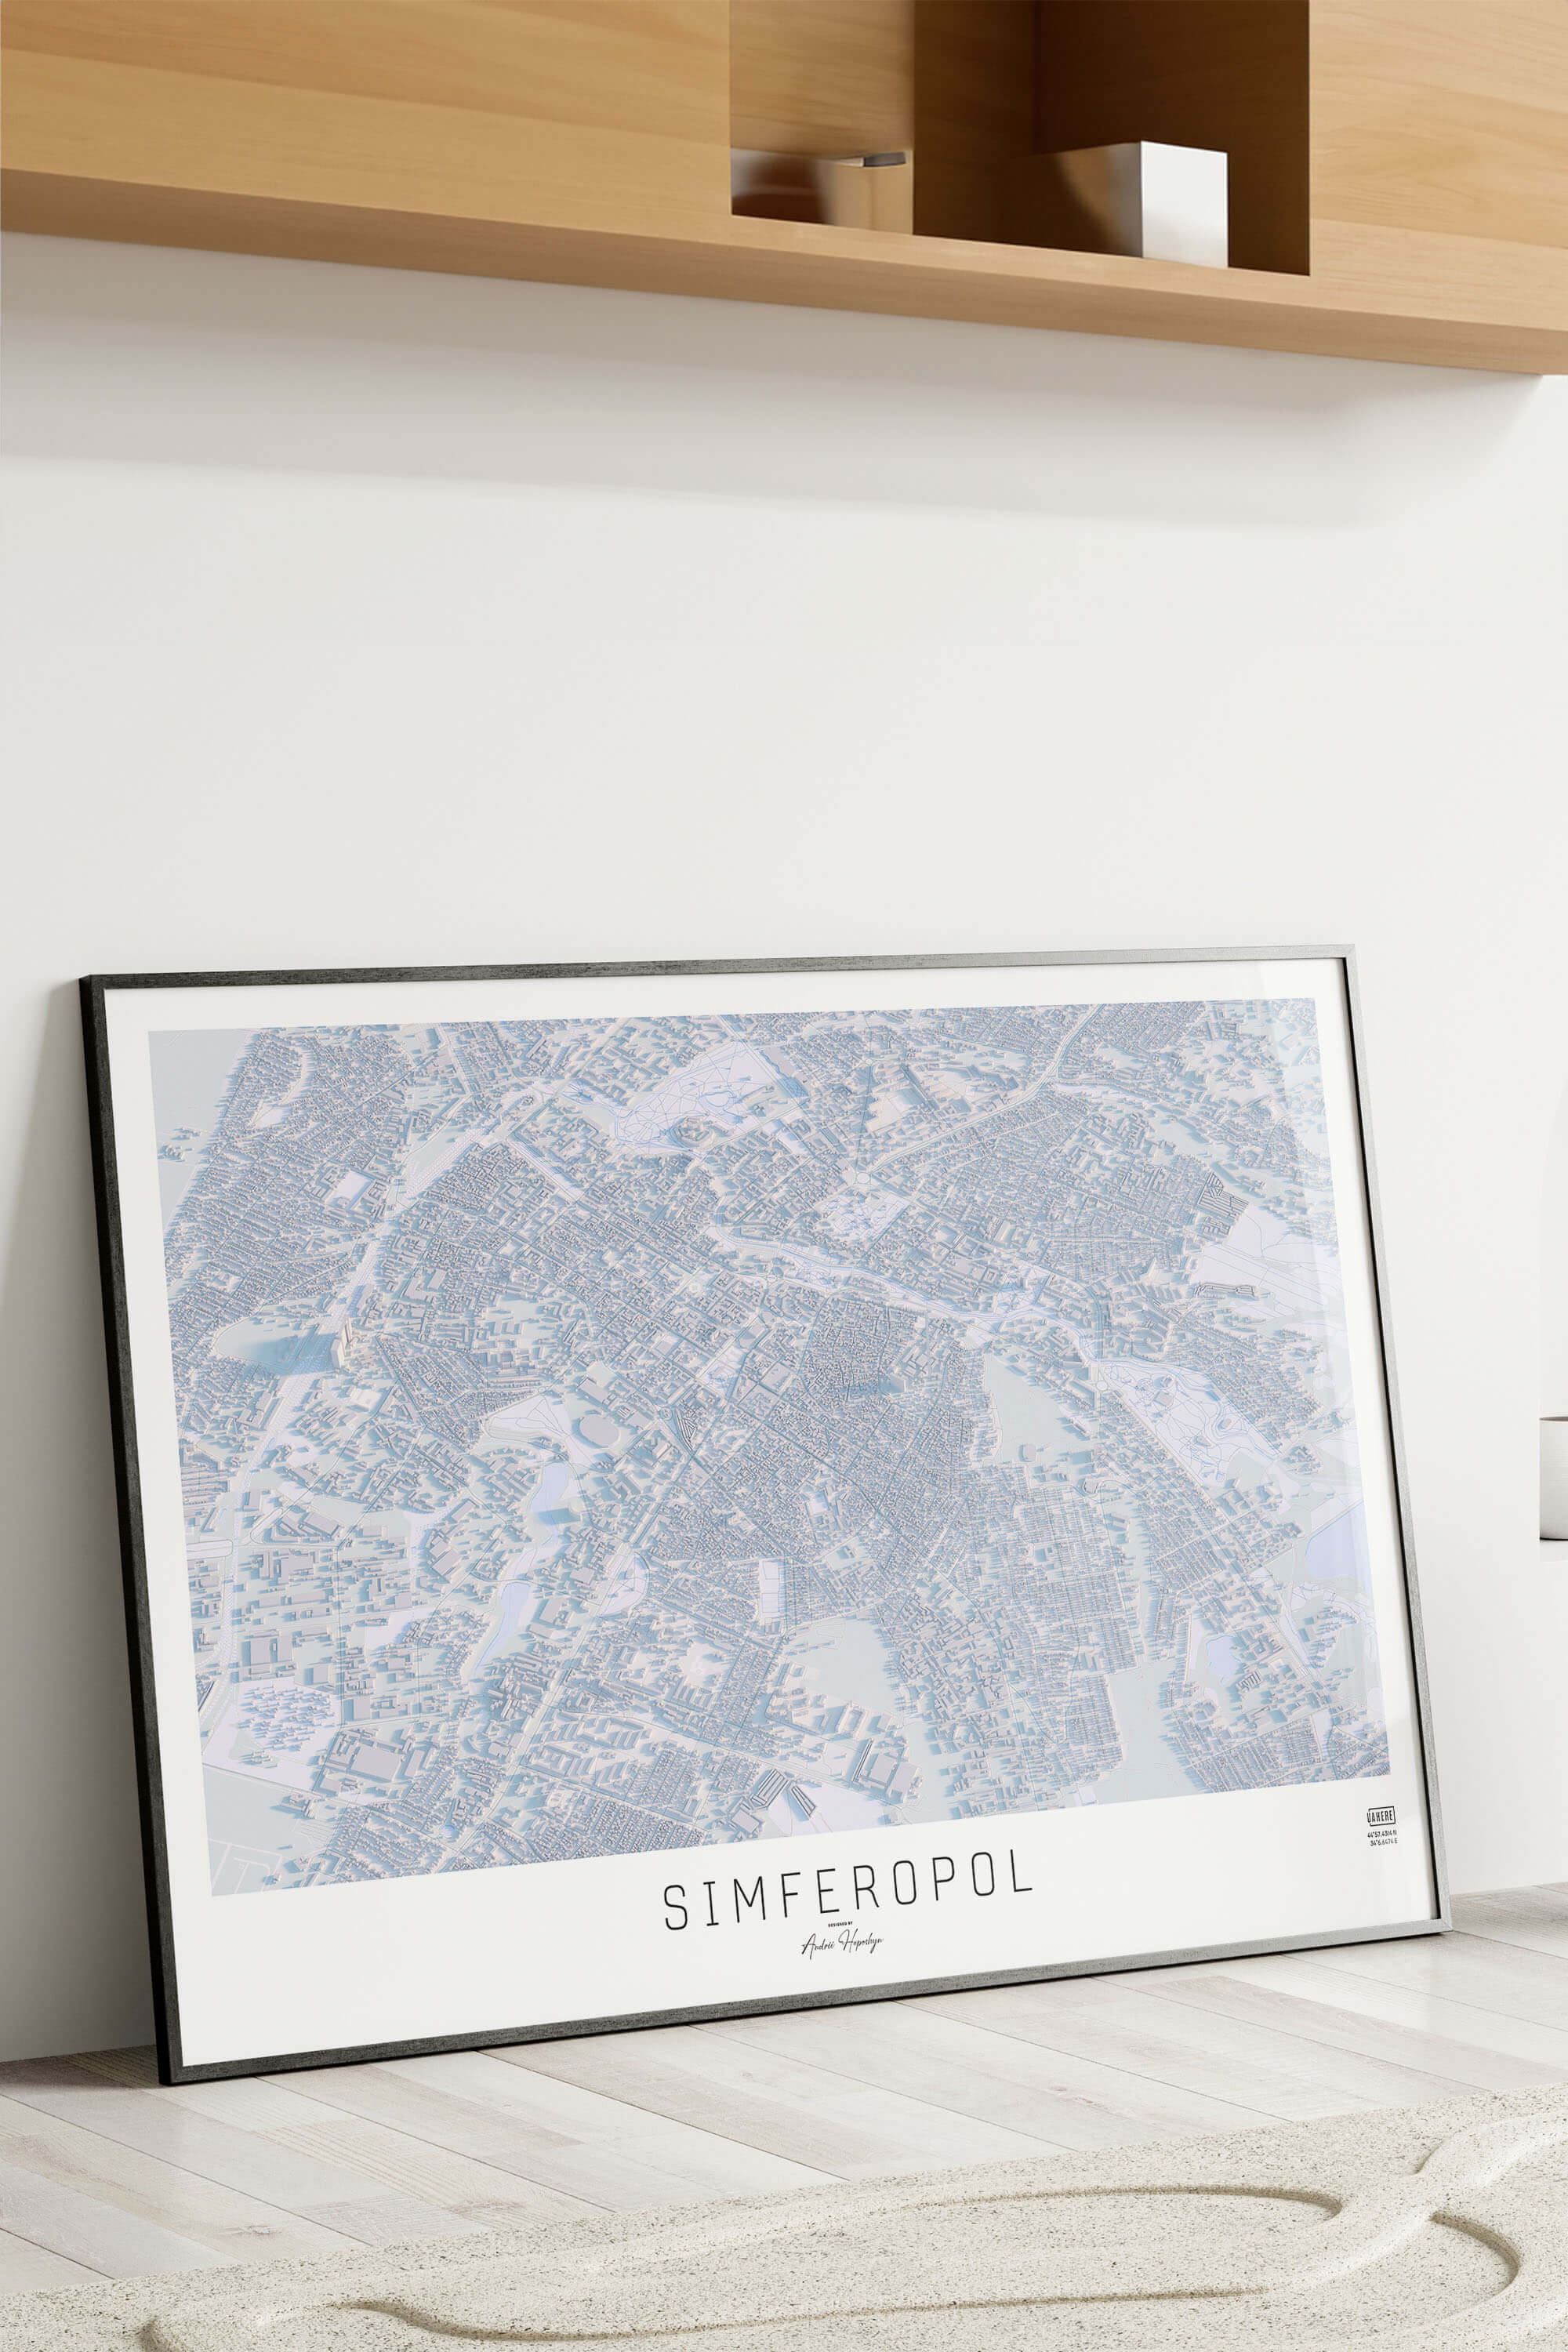 Картина міста Сімферополь в рамці на фоні стіни